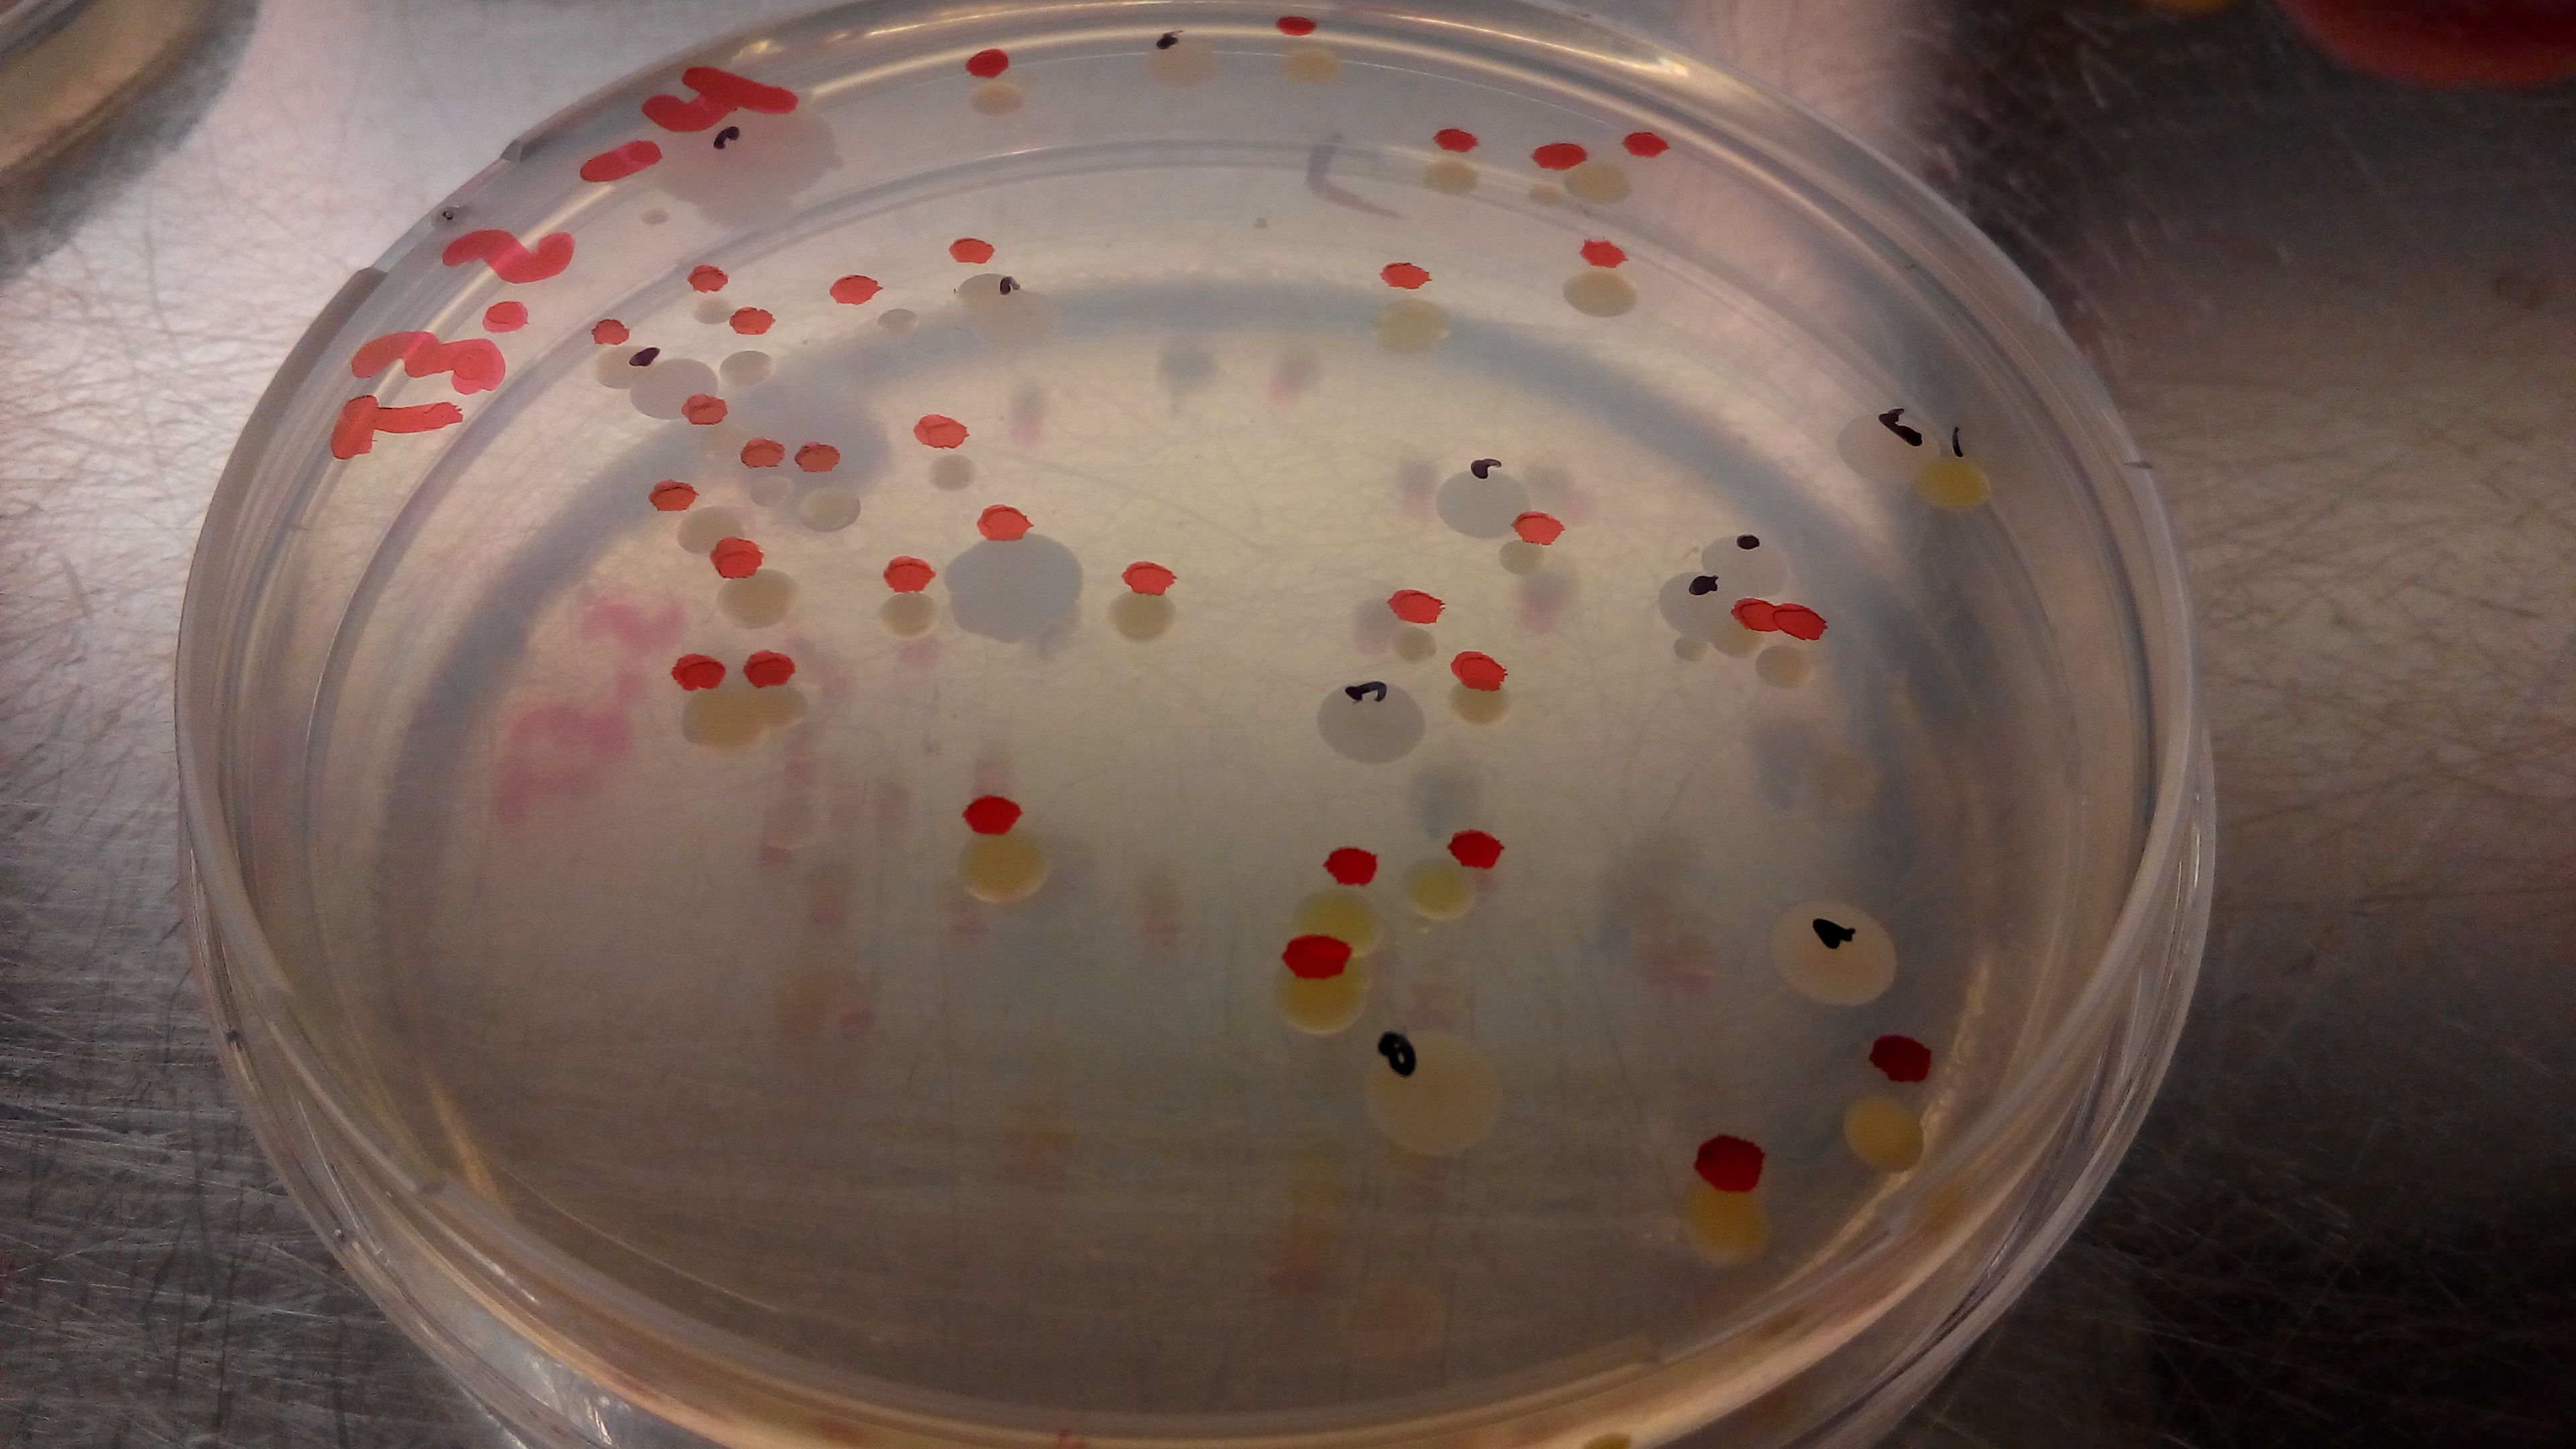 Bacterias extraídas del intestino de lombrices pueden degradar plásticos